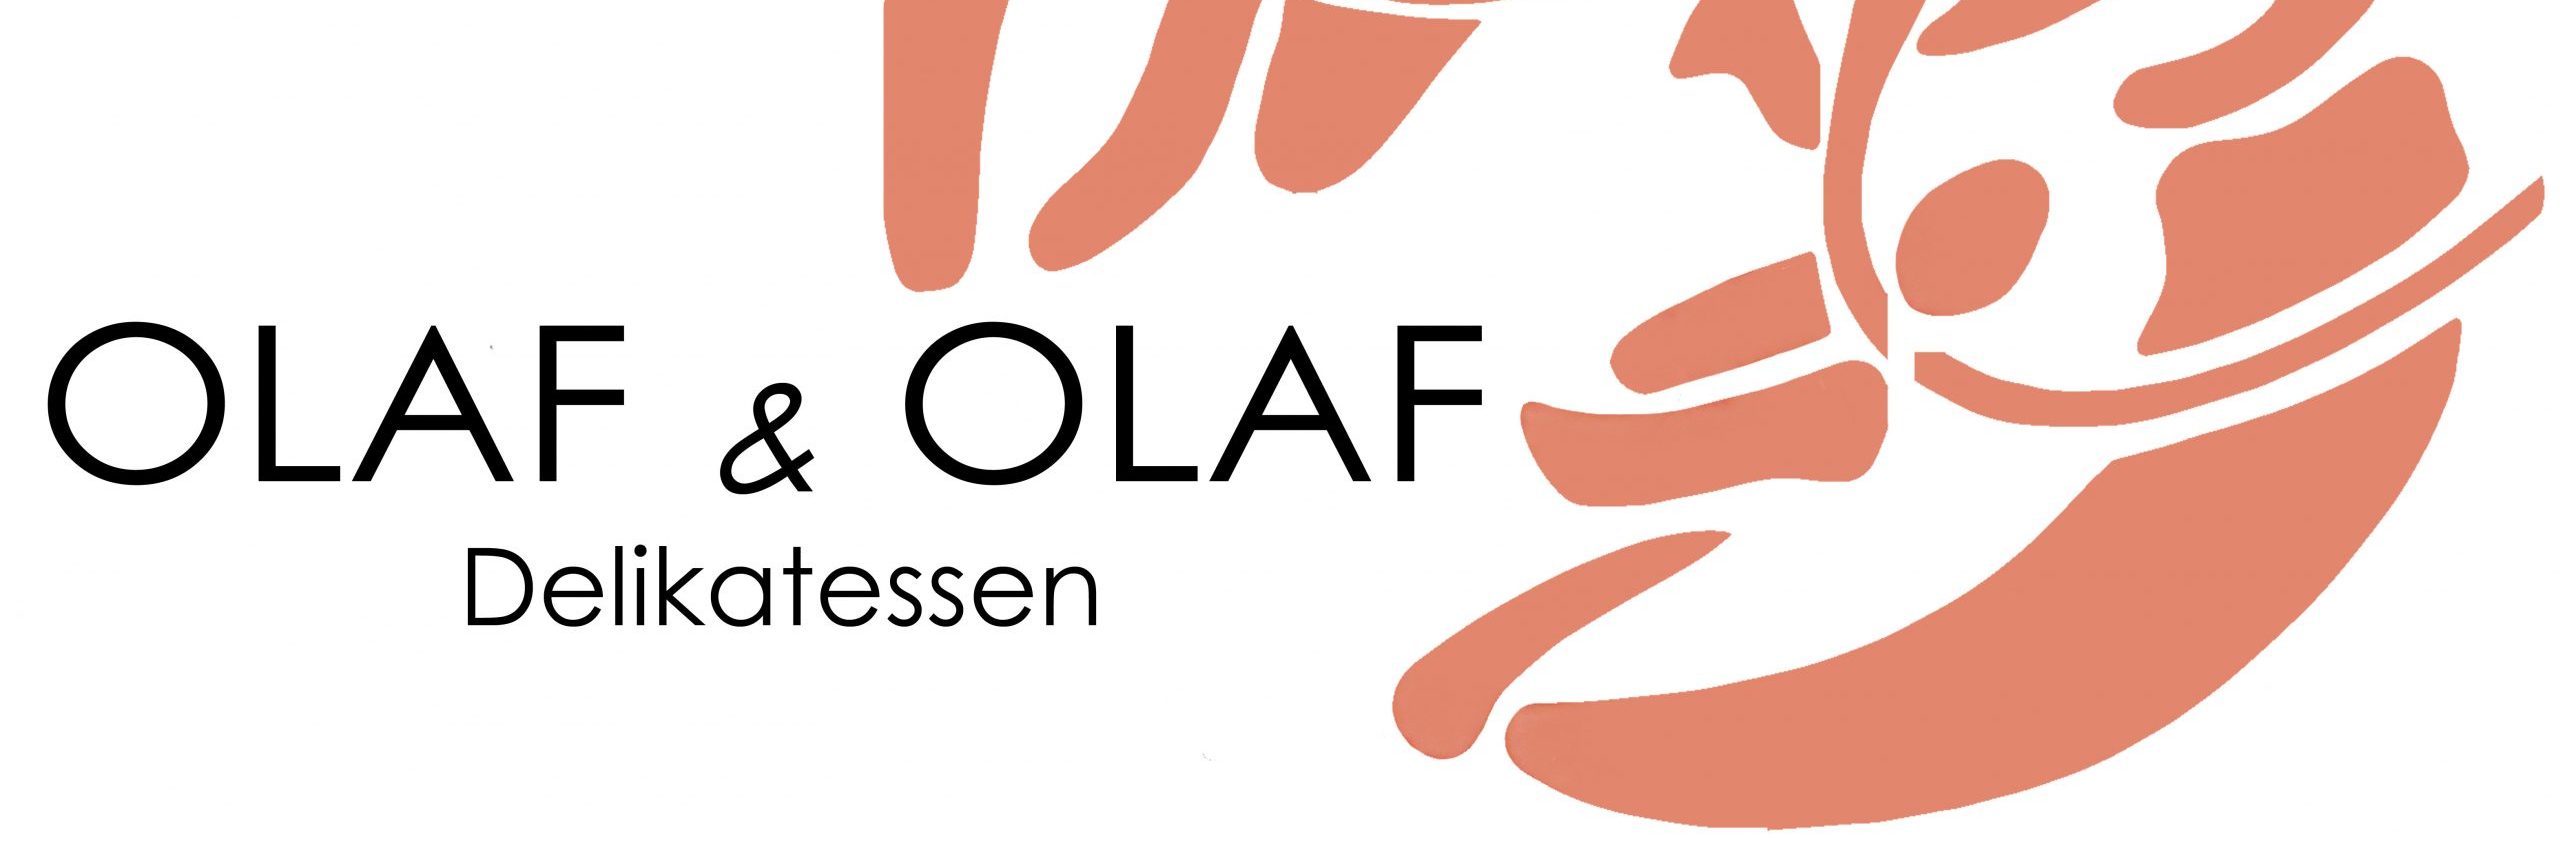 Olaf & Olaf Delikatessen